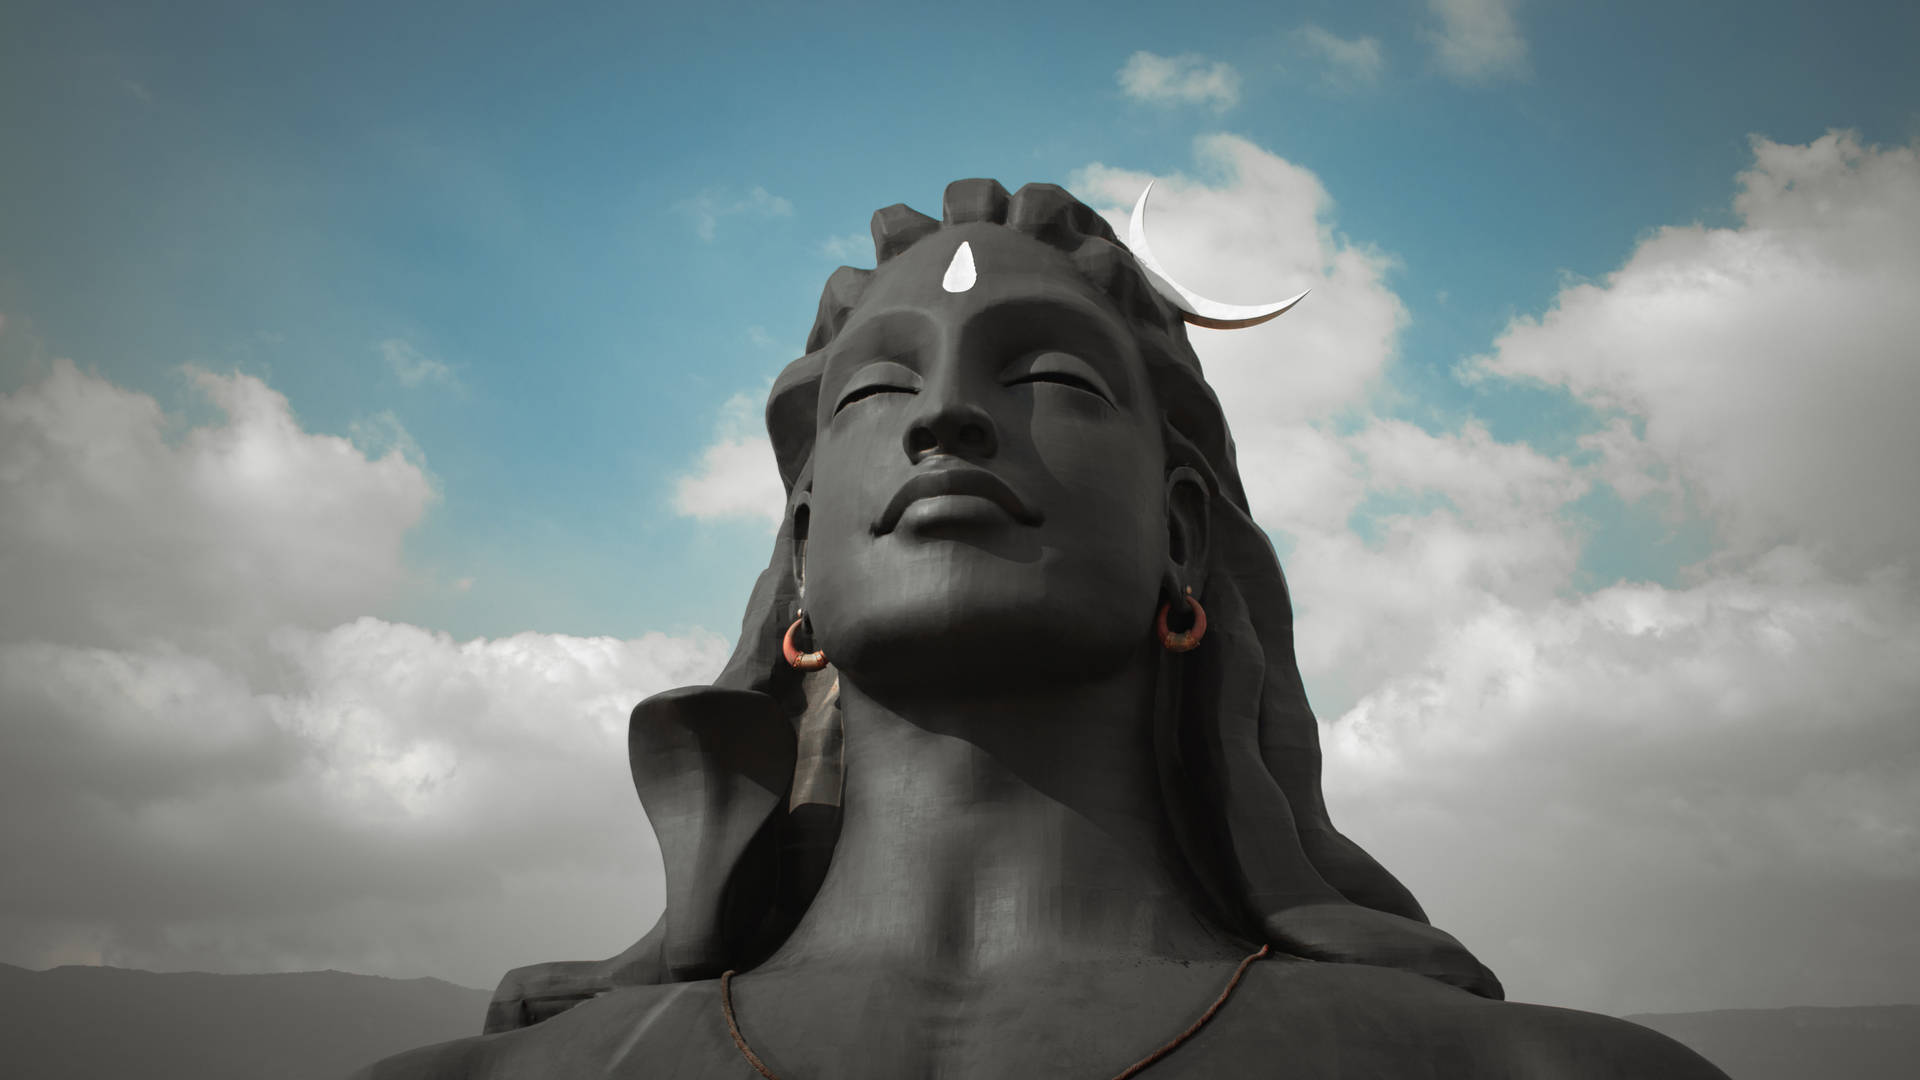 Adiyogi Shiva statue i Coimbatore Tamil Nadu. Wallpaper